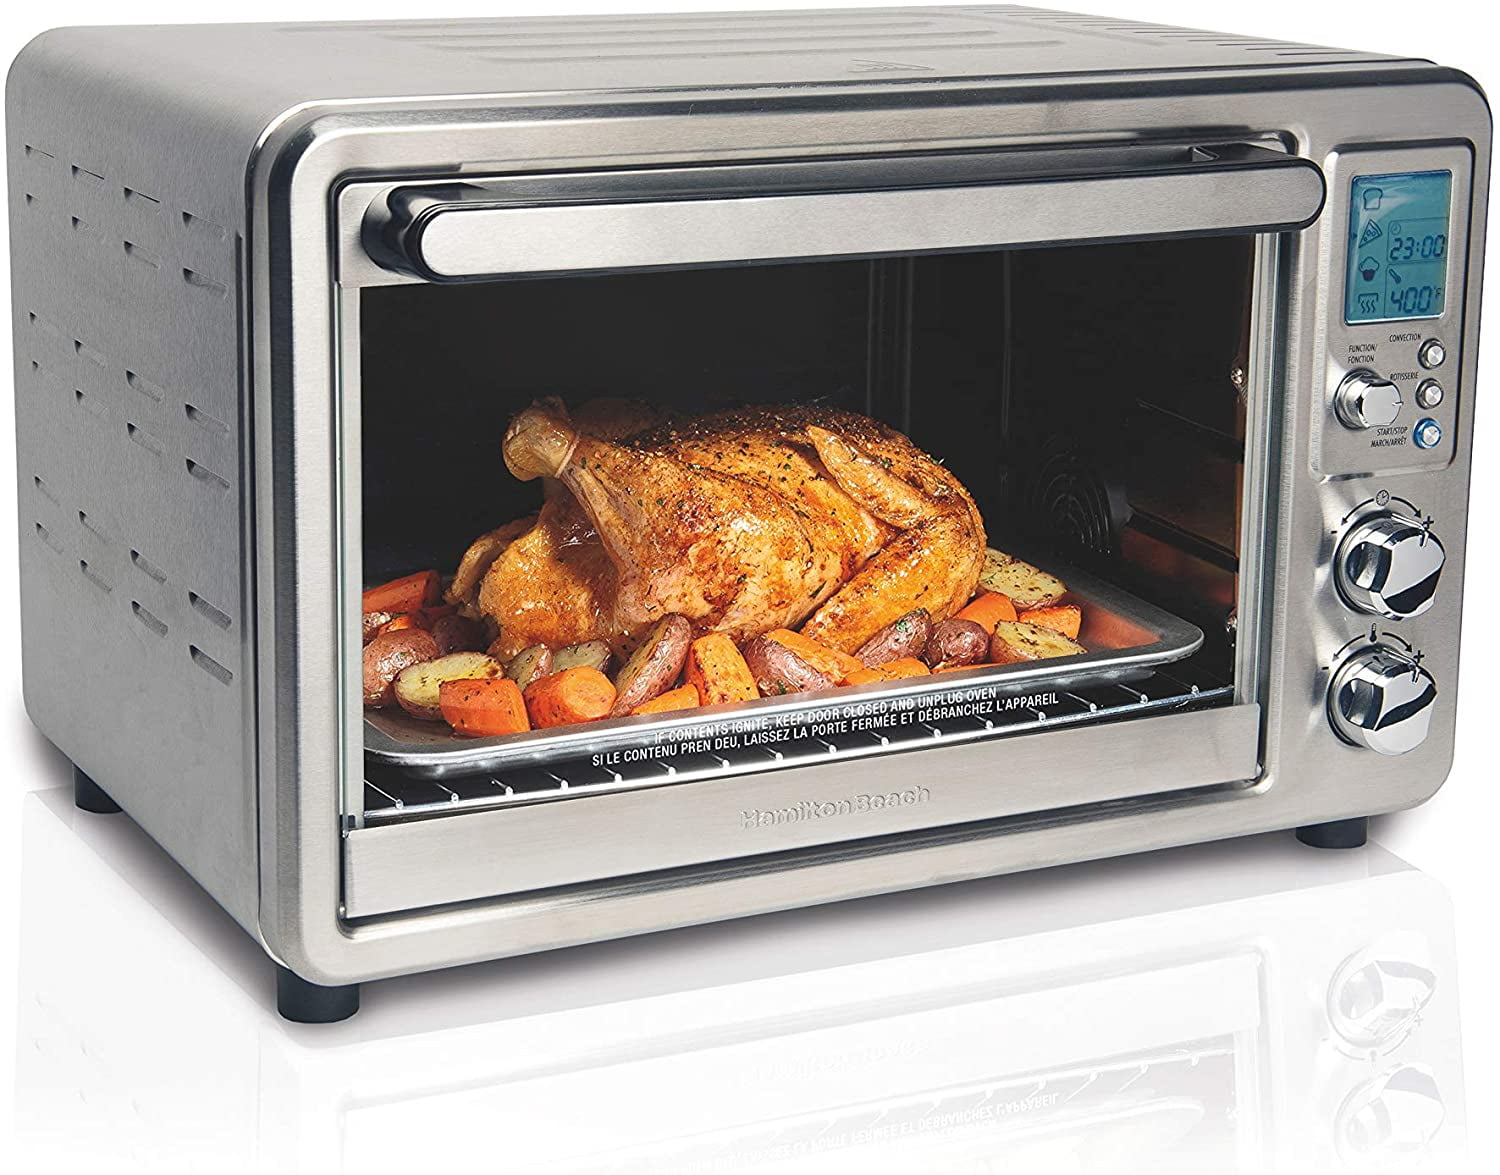 Hamilton Beach Digital Convection Countertop Toaster Oven with